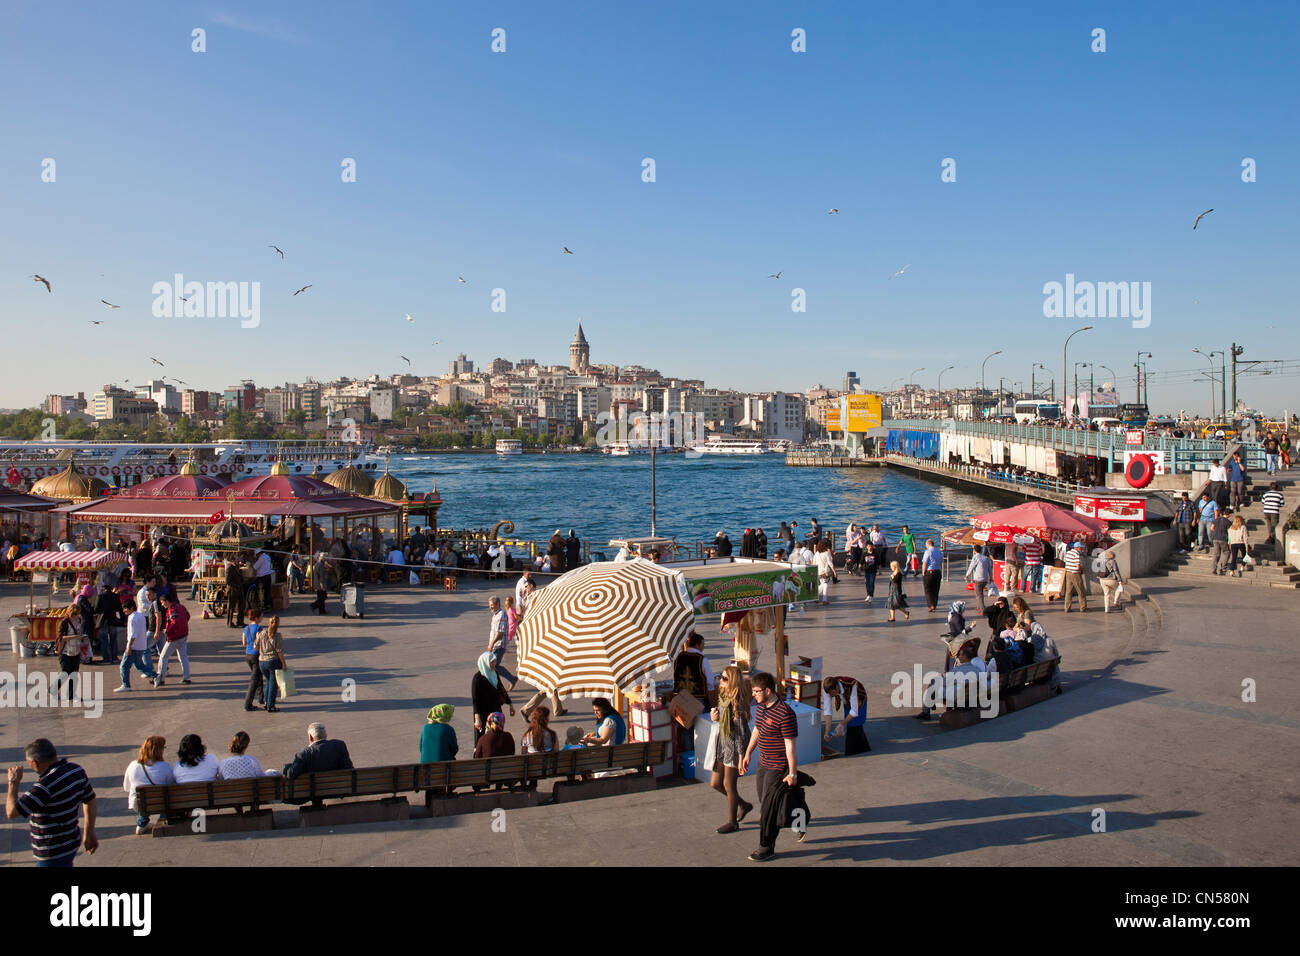 Turchia, Istanbul, Eminönü district, il porto di Eminönü lungo lo stretto del Golden Horn Foto Stock